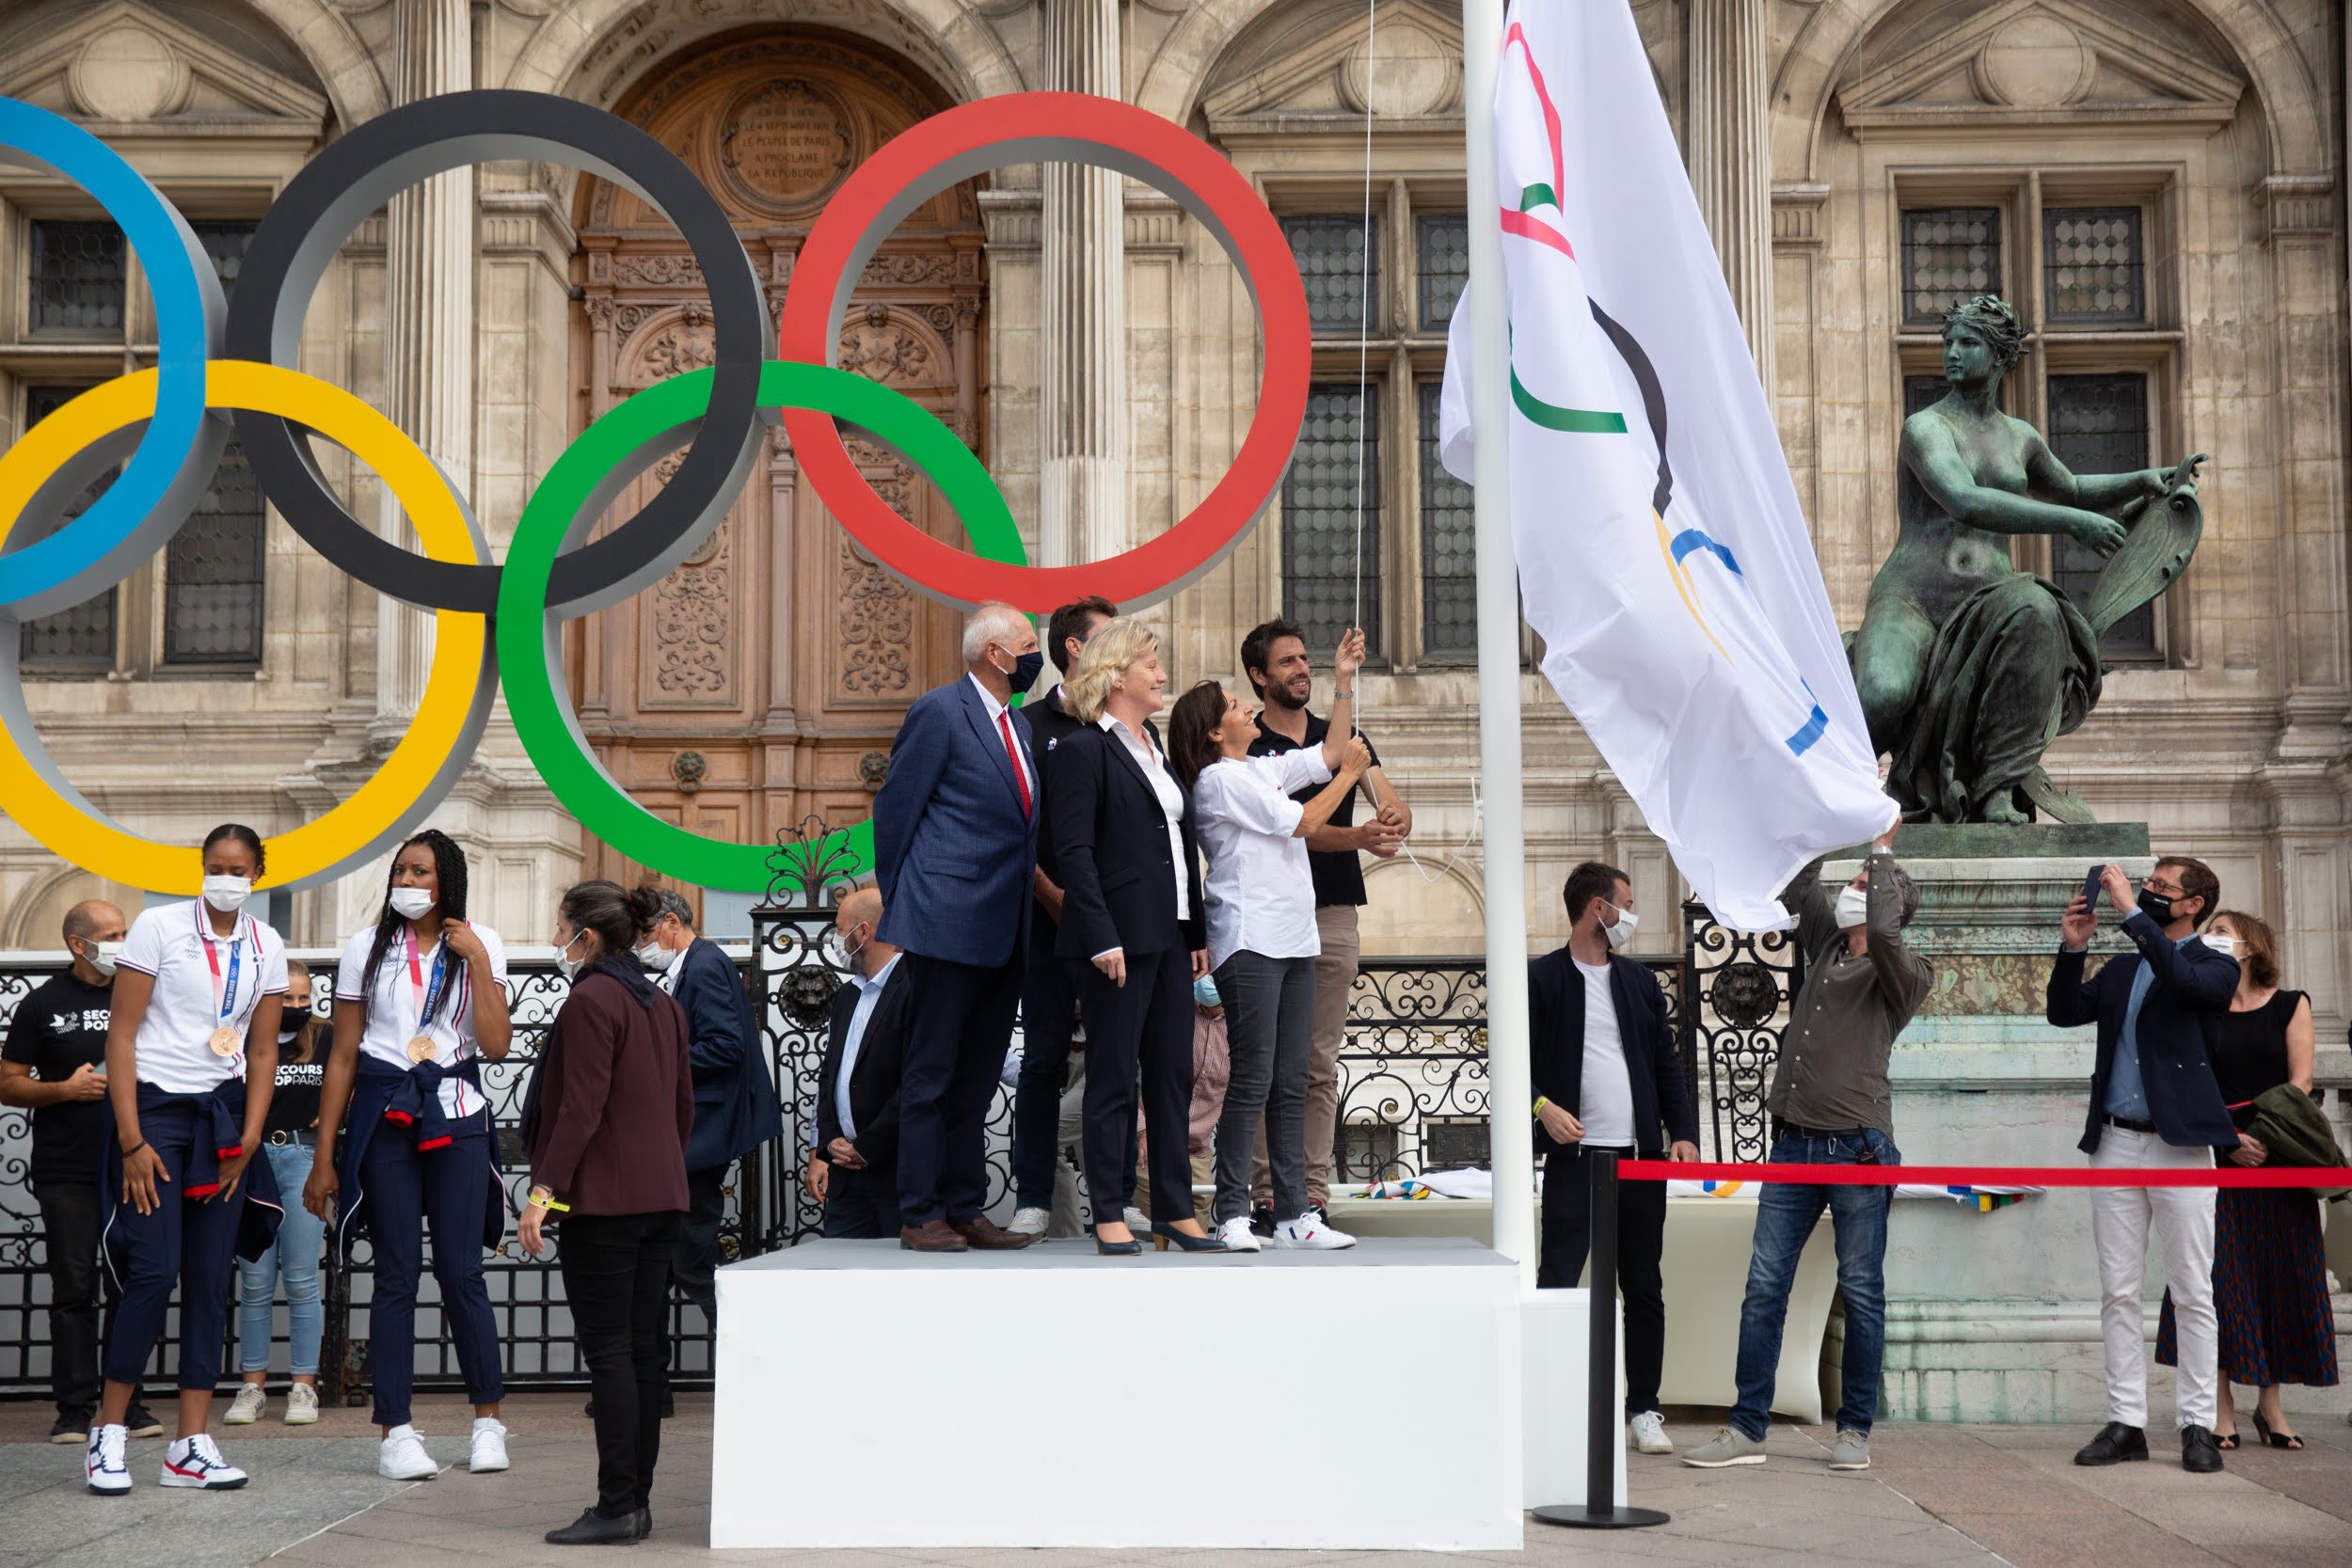 Le drapeau olympique à Paris lundi 9 août